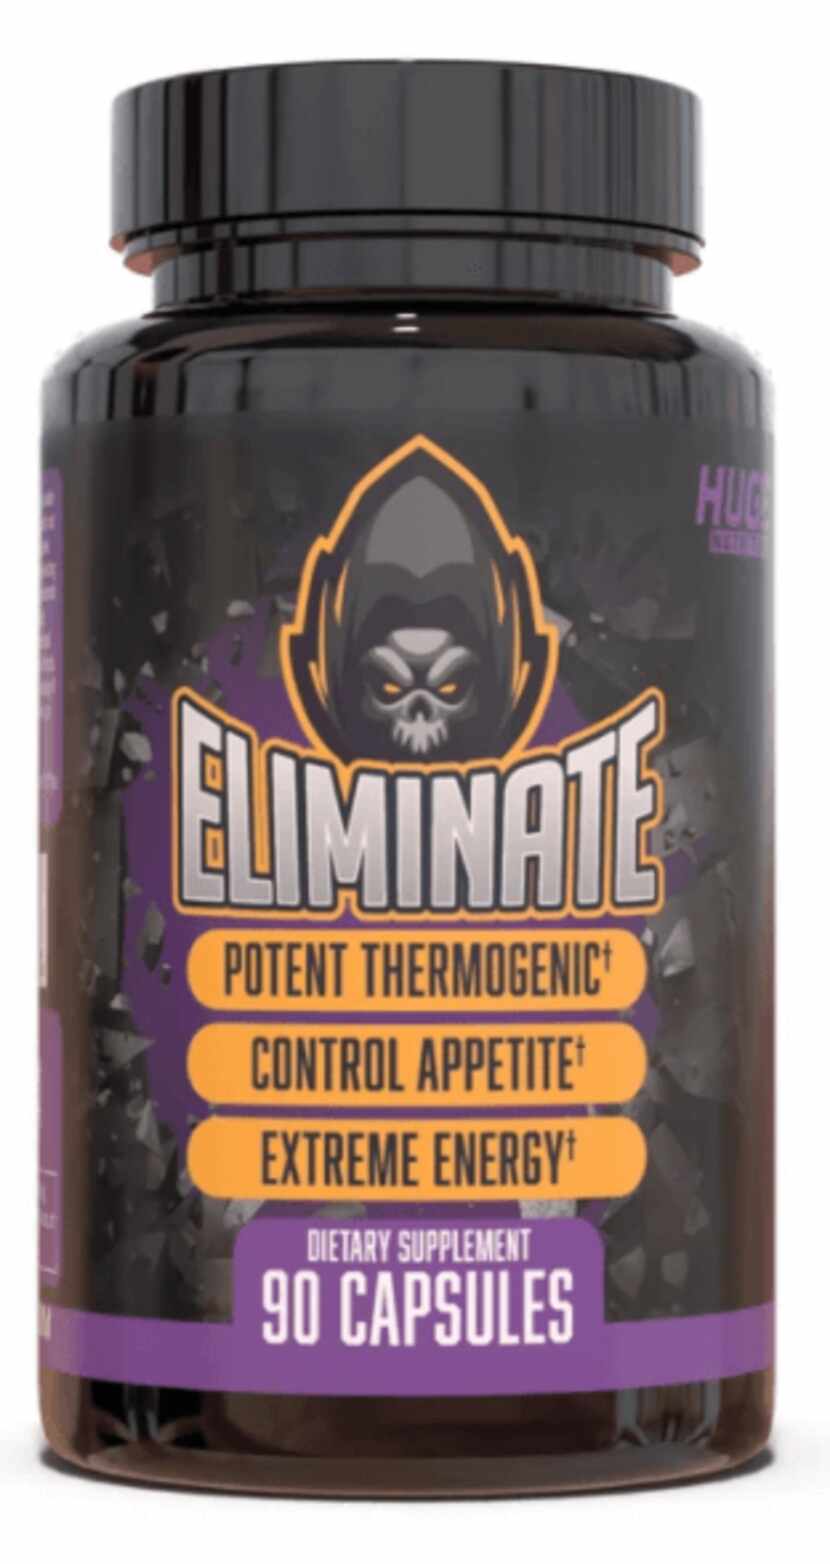 Eliminate capsules, purple and black label